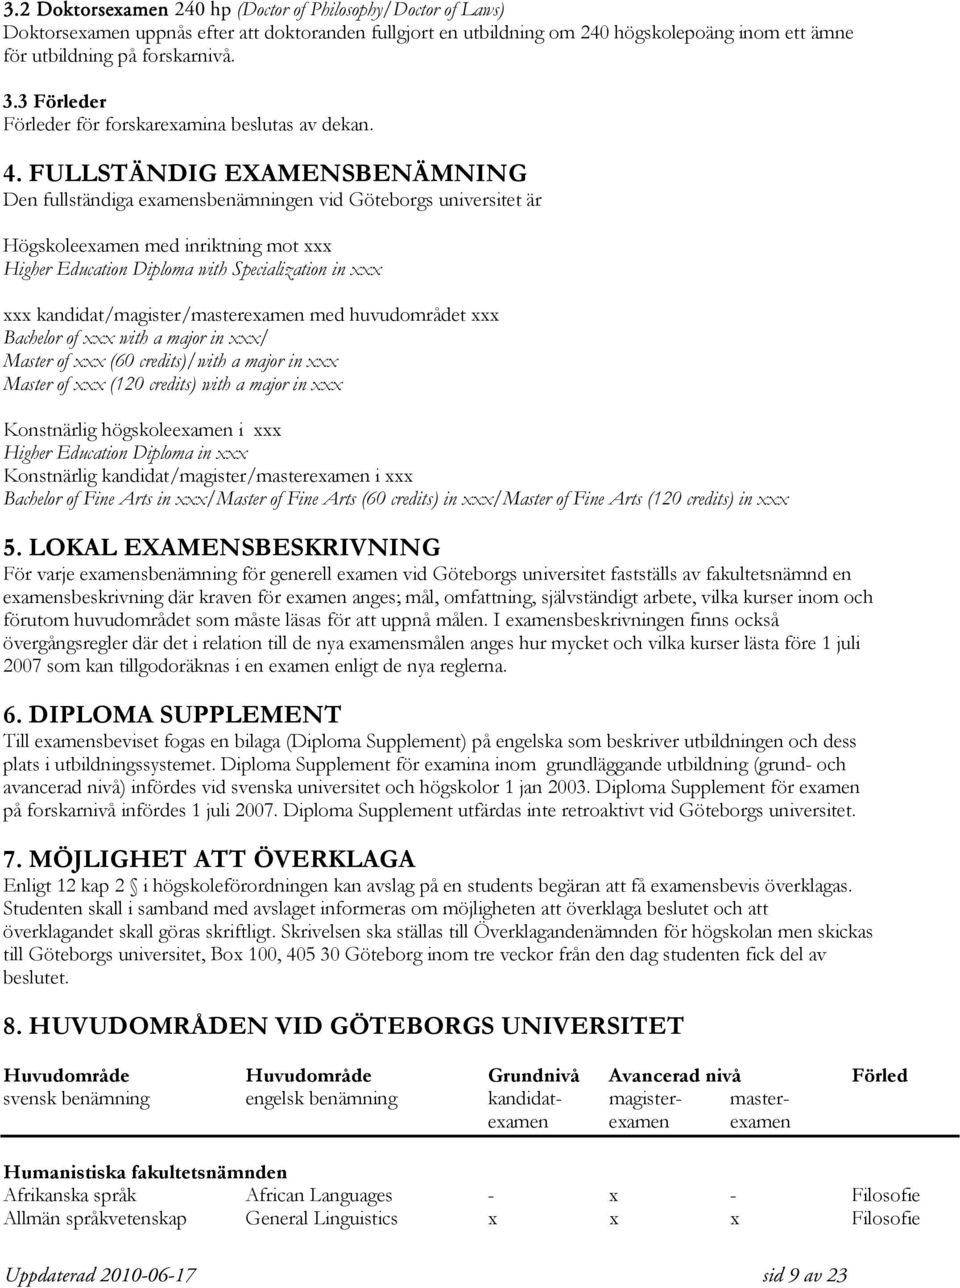 FULLSTÄNDIG EXAMENSBENÄMNING Den fullständiga examensbenämningen vid Göteborgs universitet är Högskoleexamen med inriktning mot xxx Higher Education Diploma with Specialization in xxx xxx